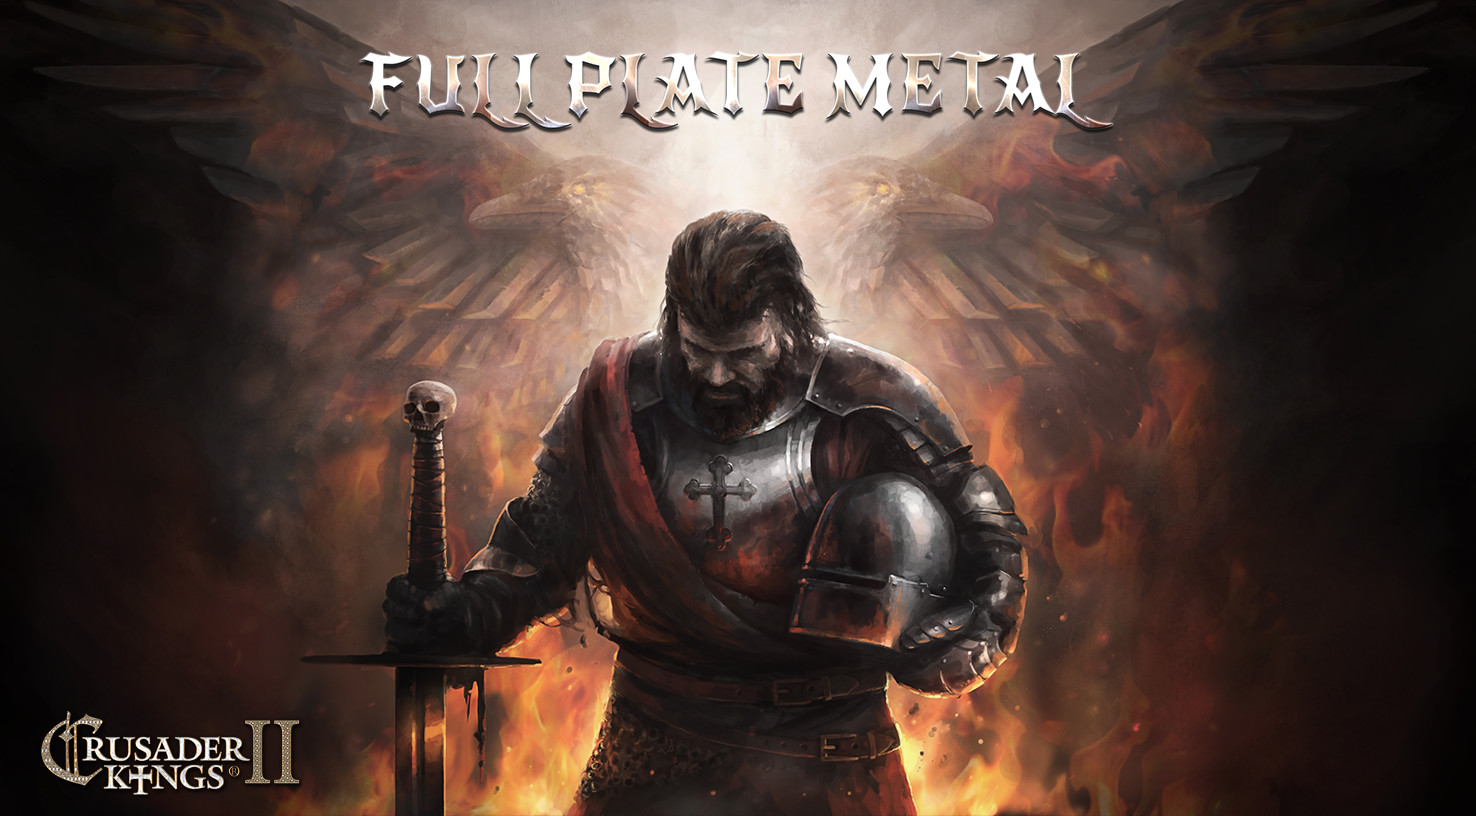 Crusader Kings II - Full Plate Metal DLC Steam CD Key 1.84 USD